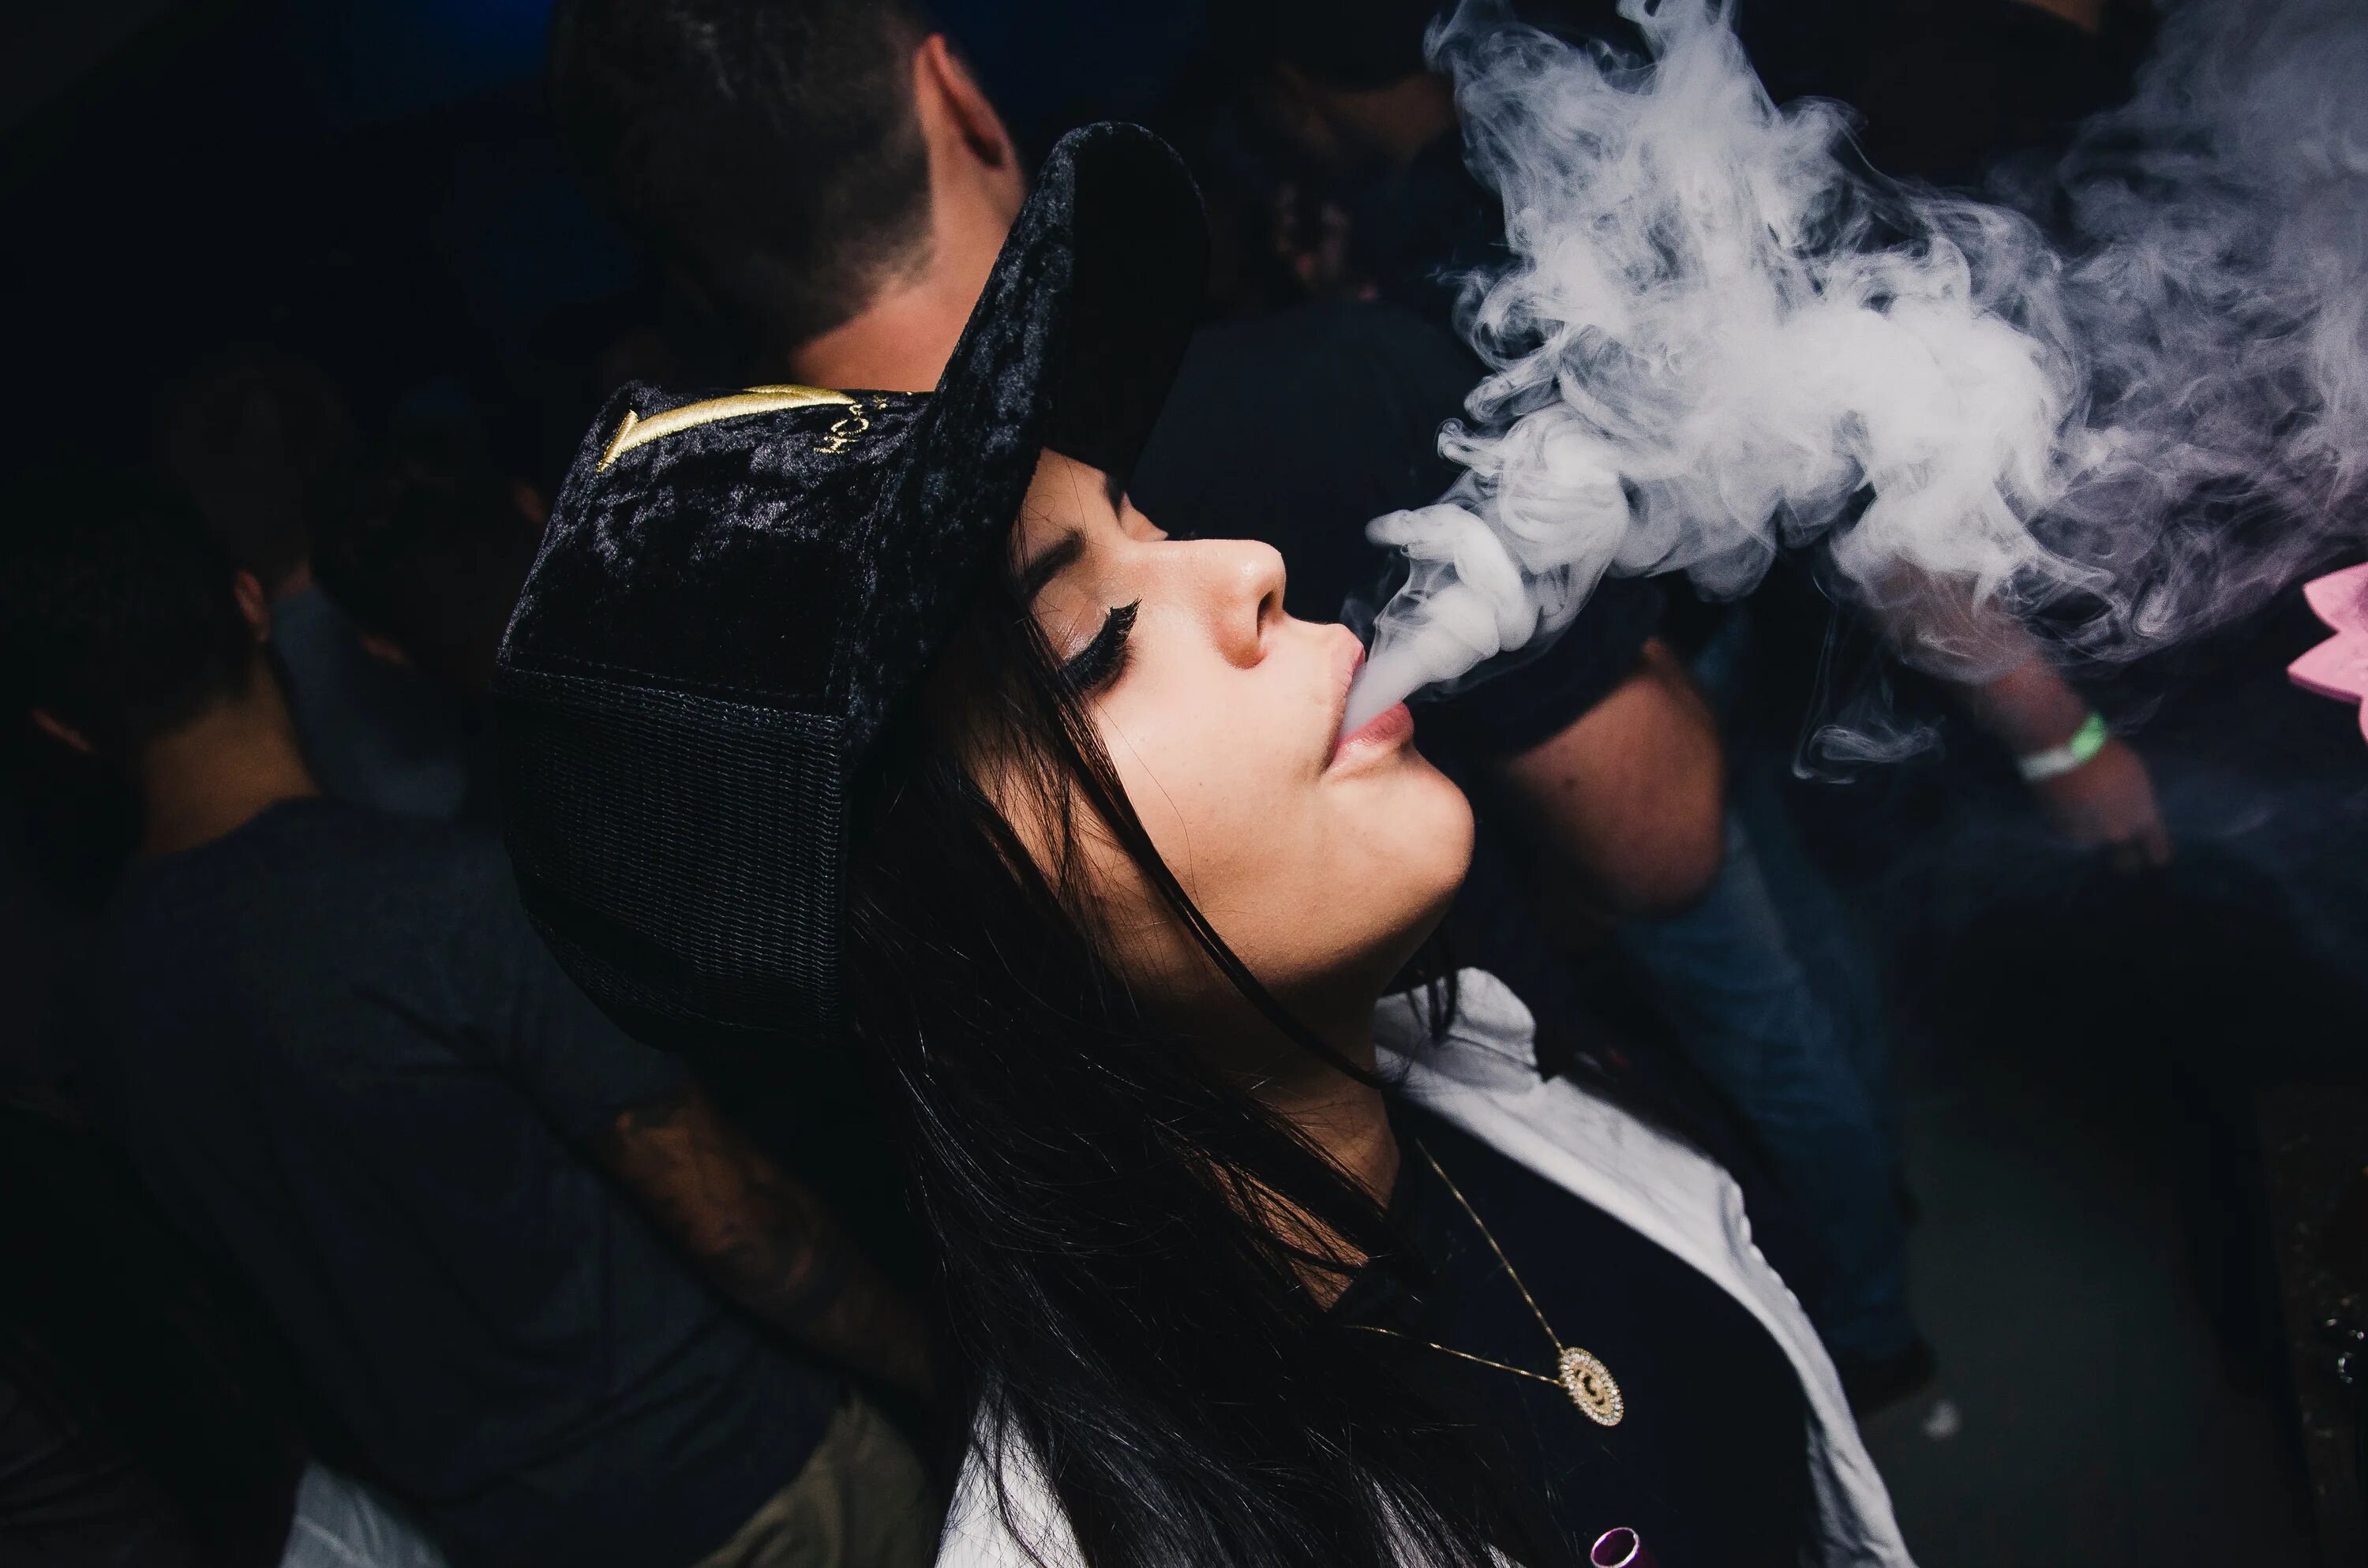 Француз дым. Девушка в дыму. Девушка с кальяном. Курит кальян. Парень и девушка в сигаретном дыму.